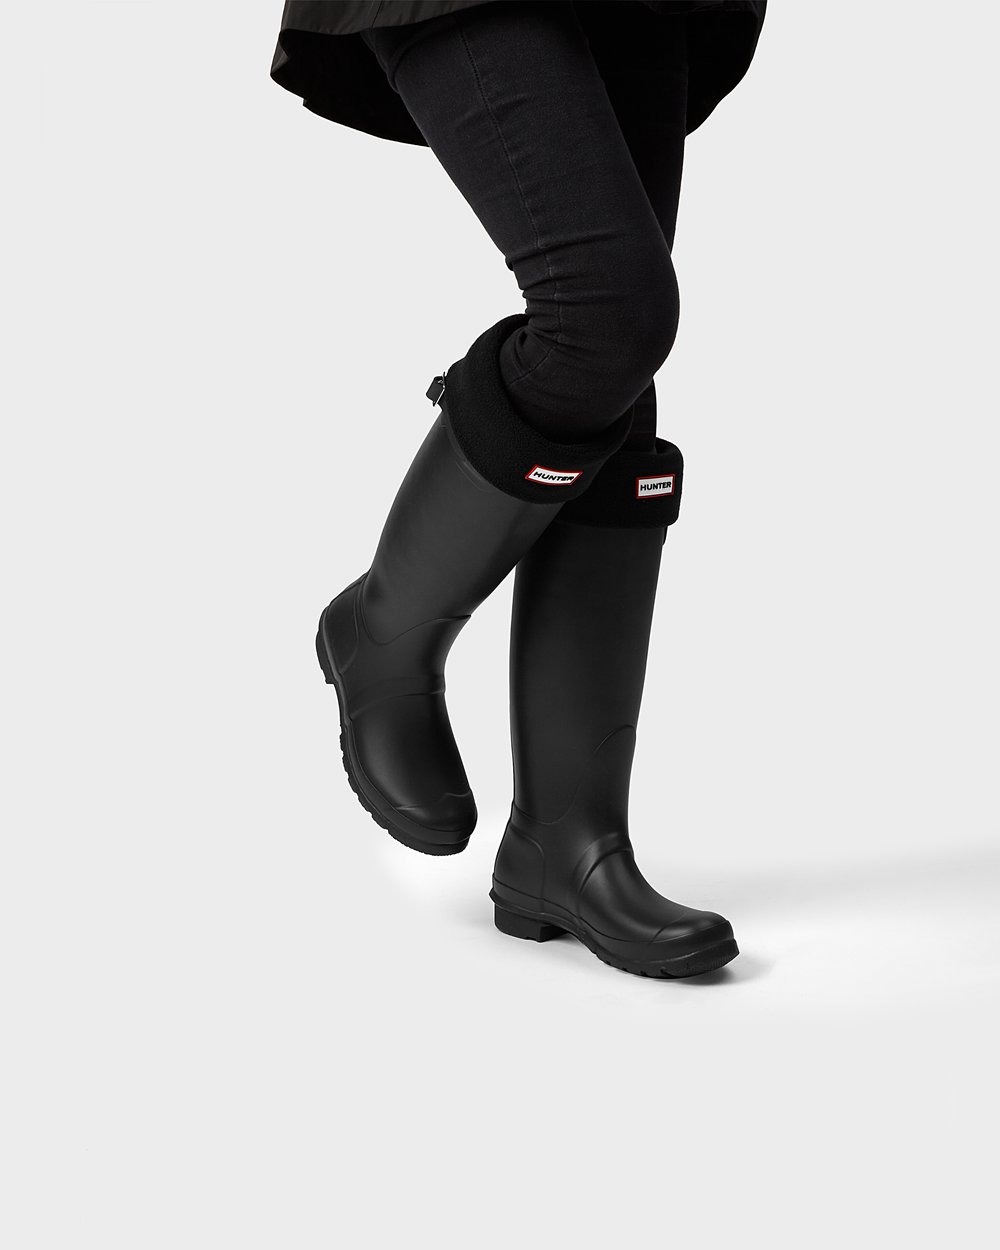 Womens Tall Rain Boots - Hunter Original (57GZEWUTD) - Black